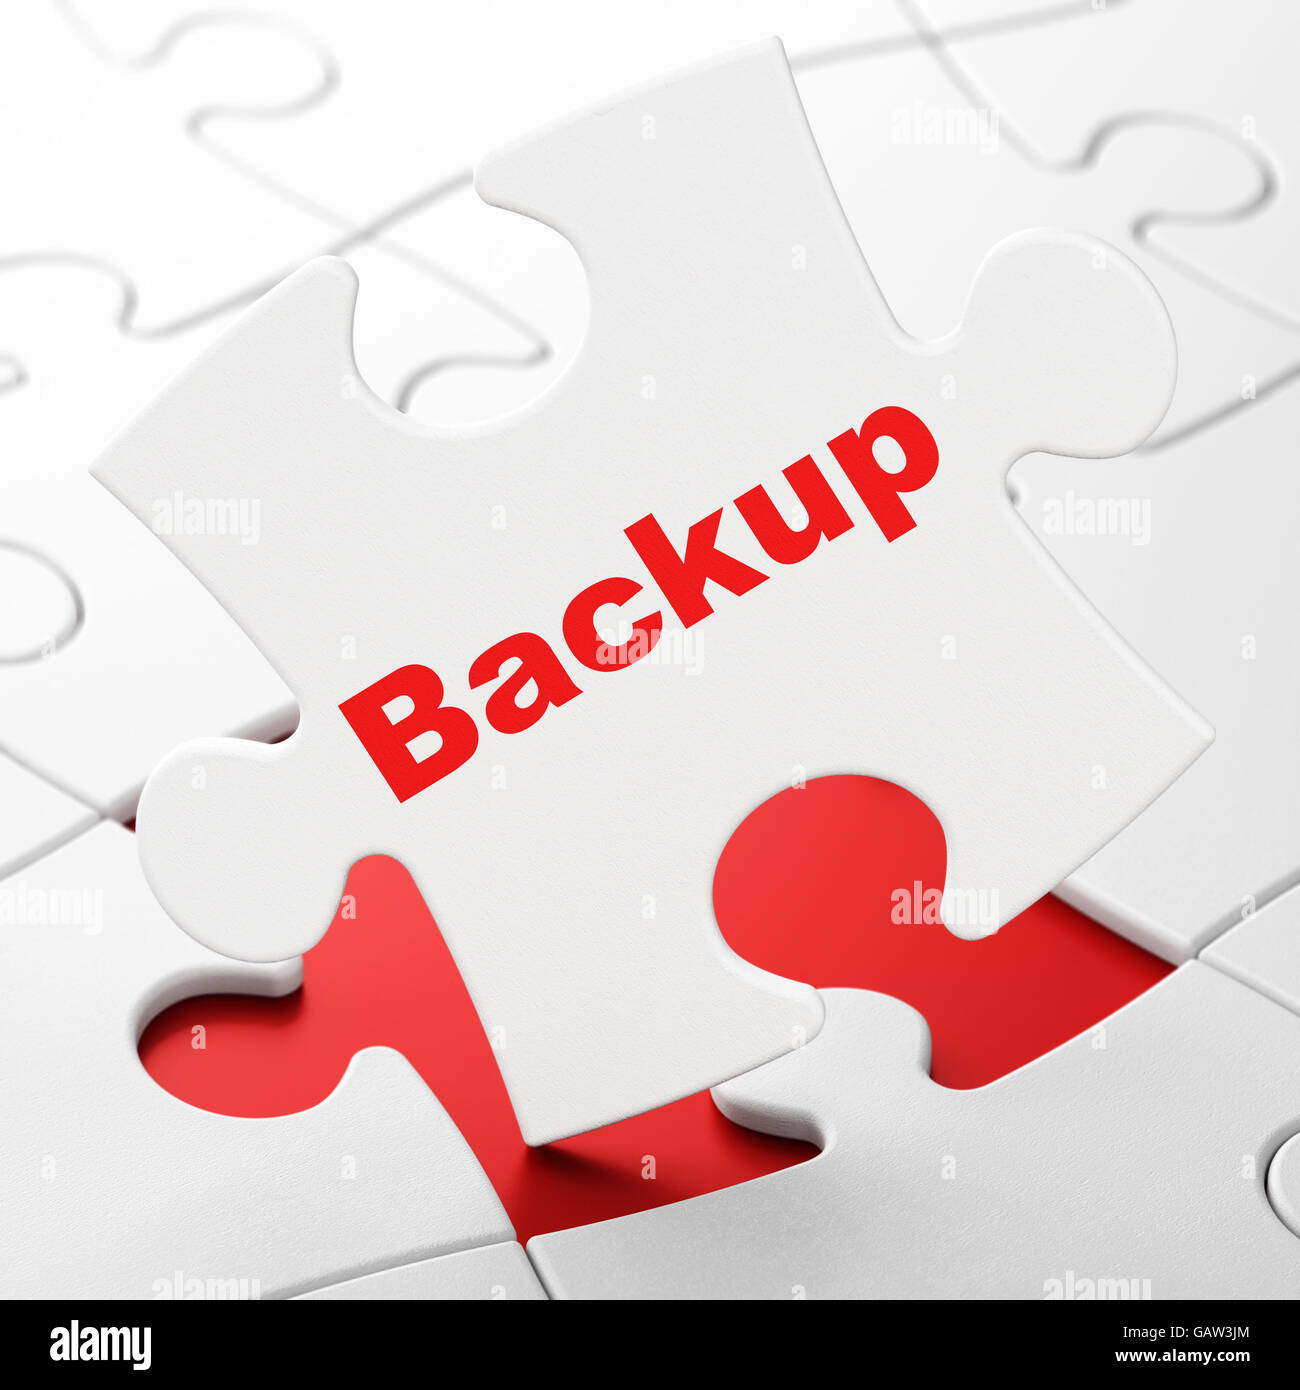 Logiciel Concept : Backup sur fond de puzzle Photo Stock - Alamy